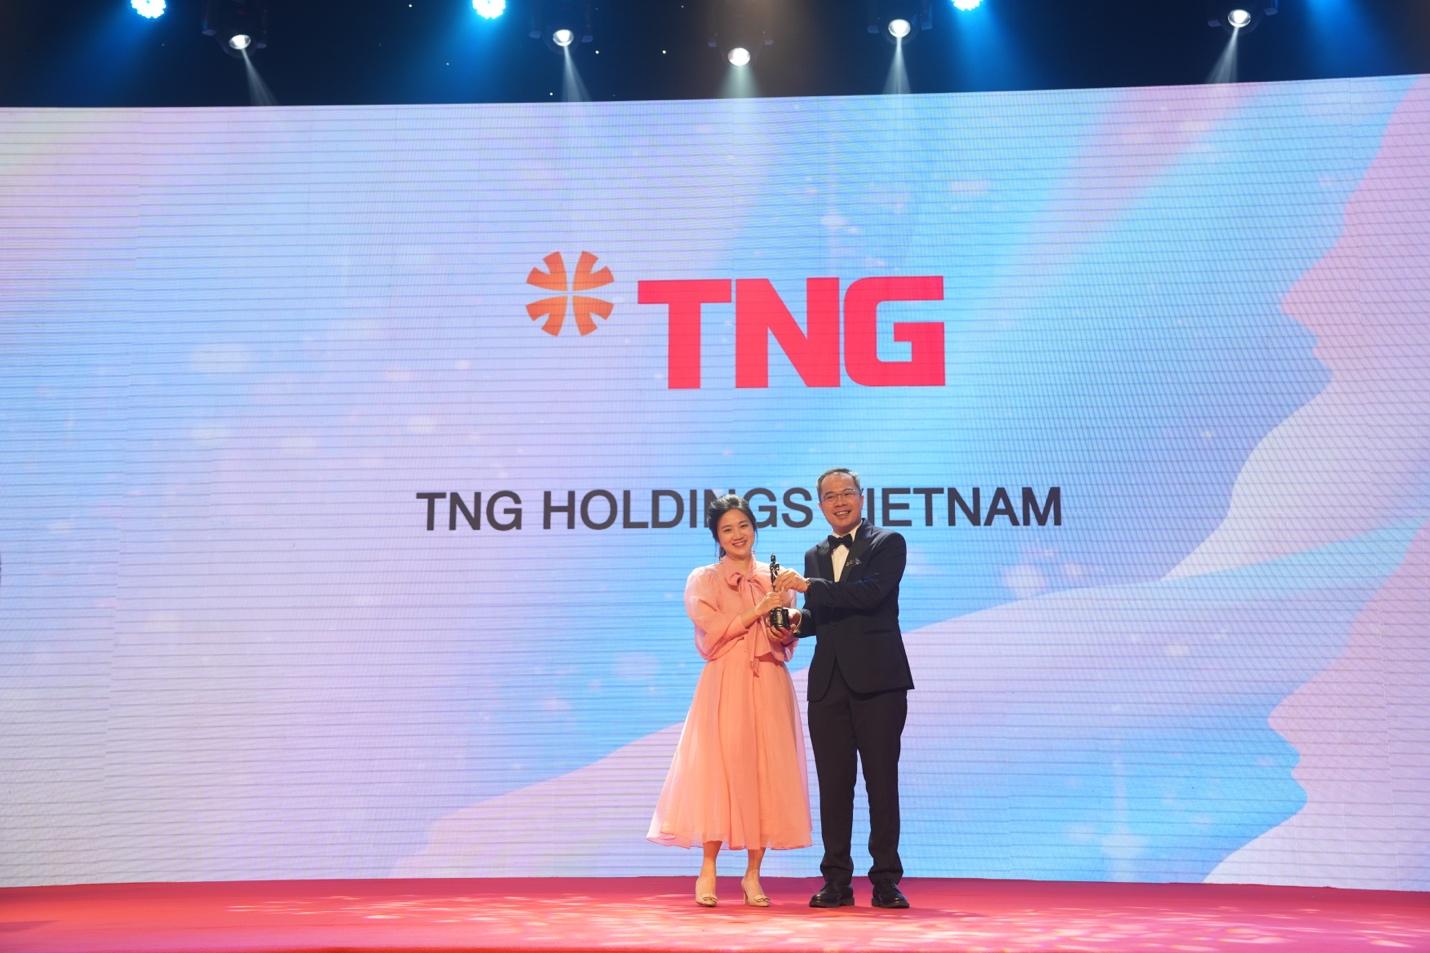 HR Asia vinh danh TNG Holdings Vietnam là “Nơi làm việc tốt nhất châu Á” - Ảnh 1.